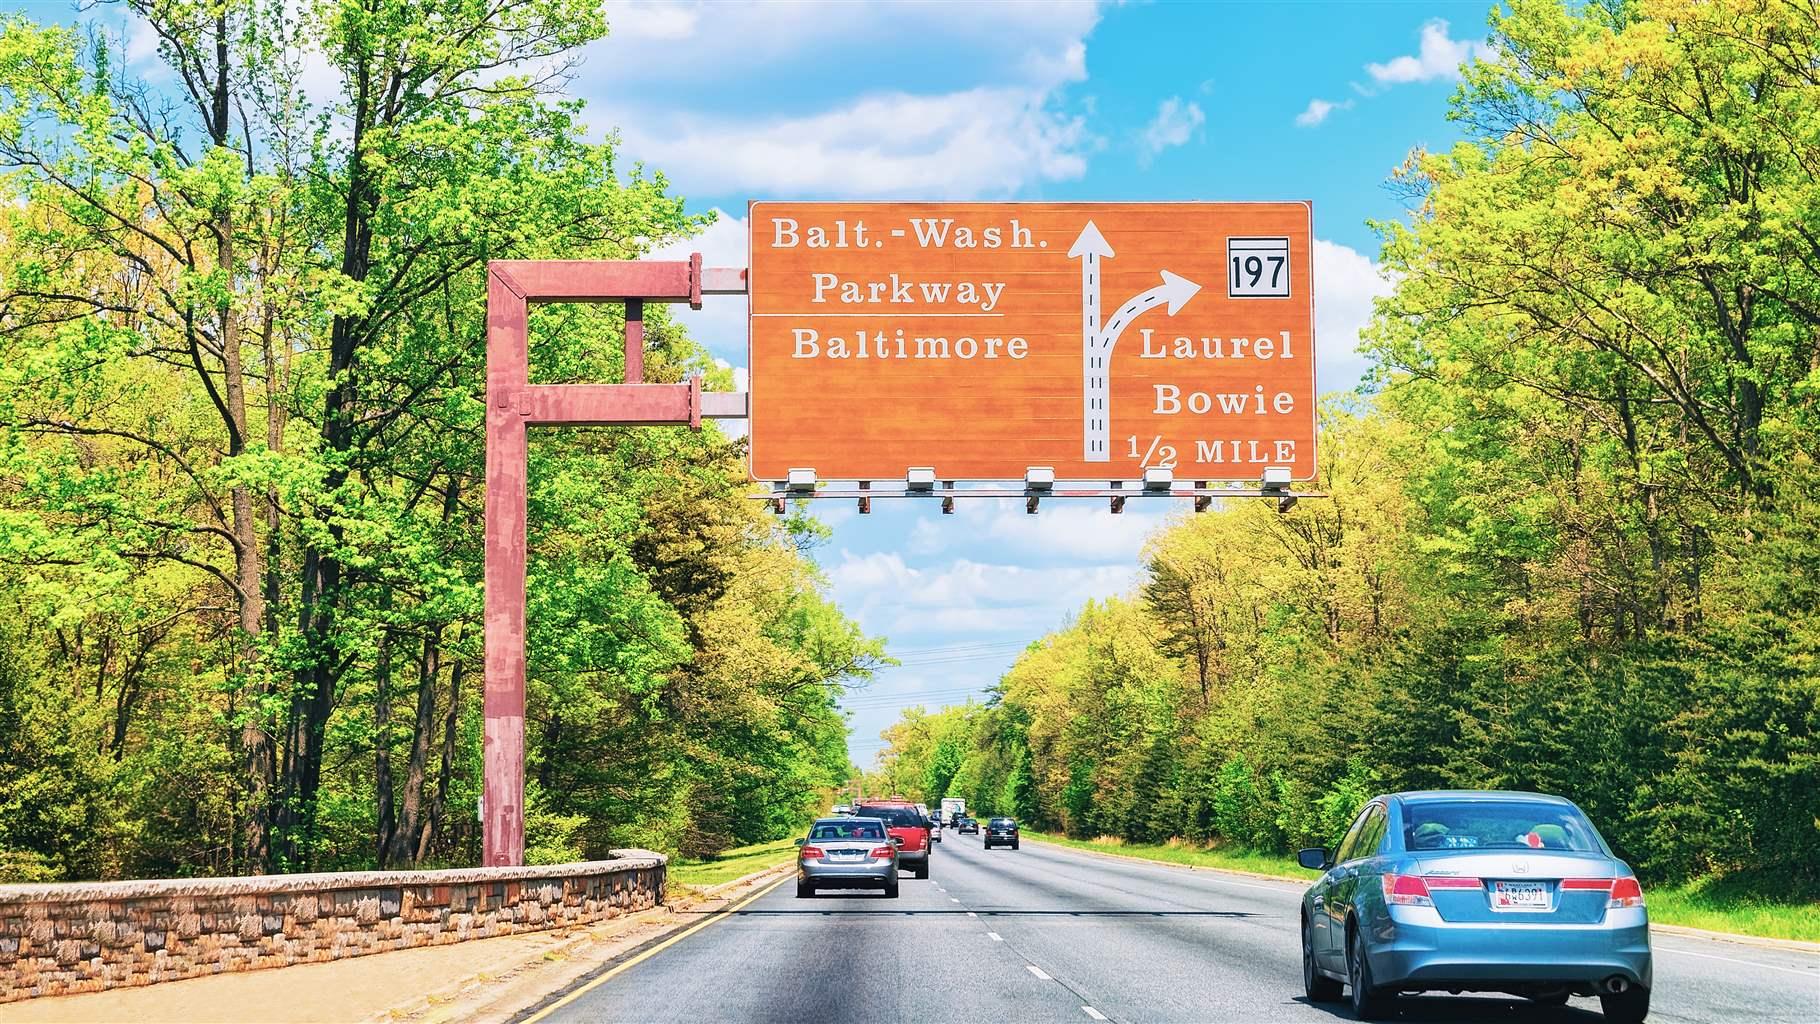 Baltimore-Washington Parkway